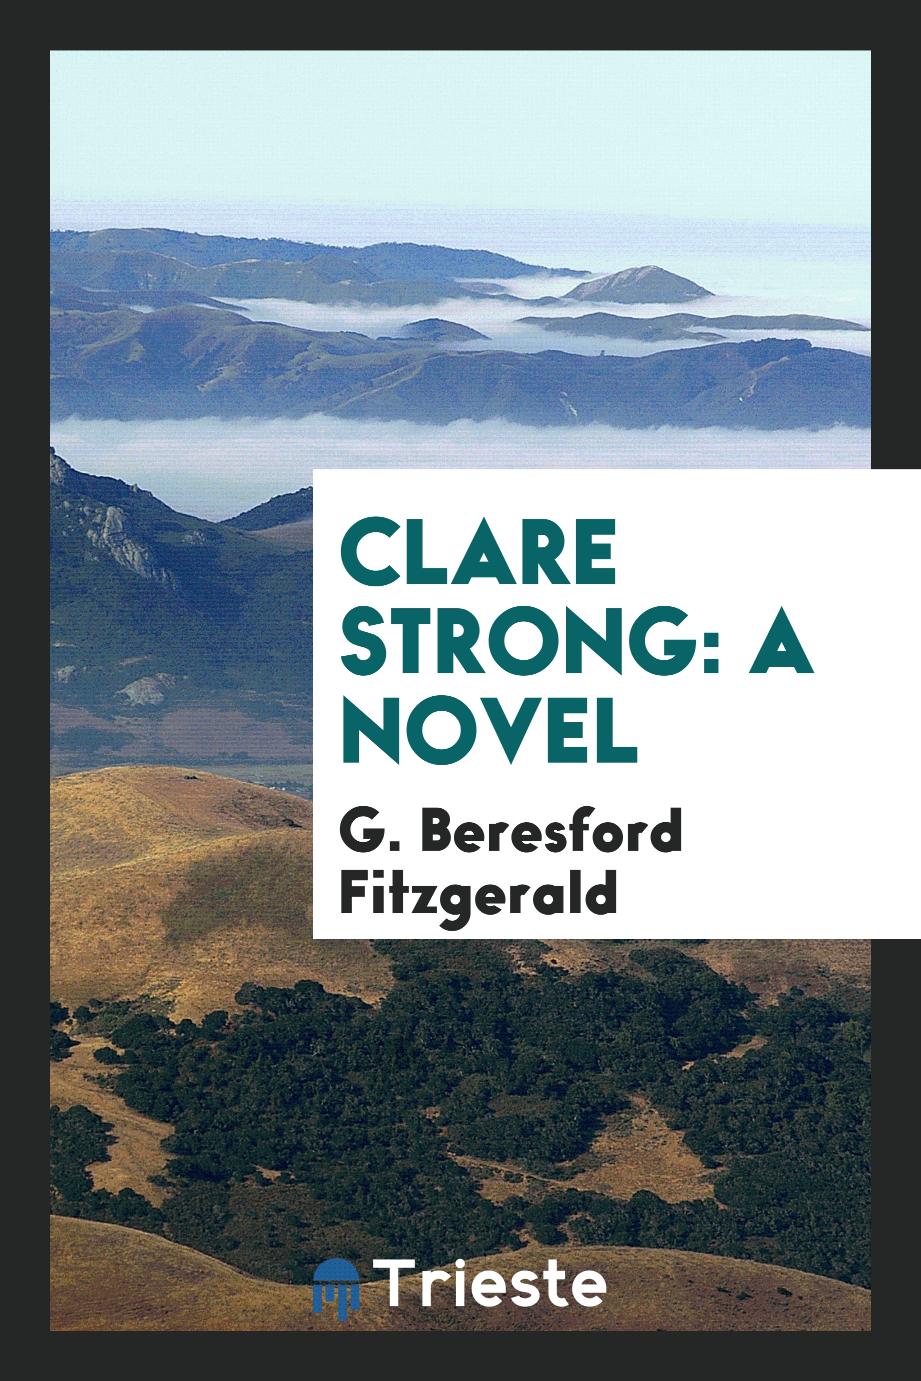 Clare Strong: a novel